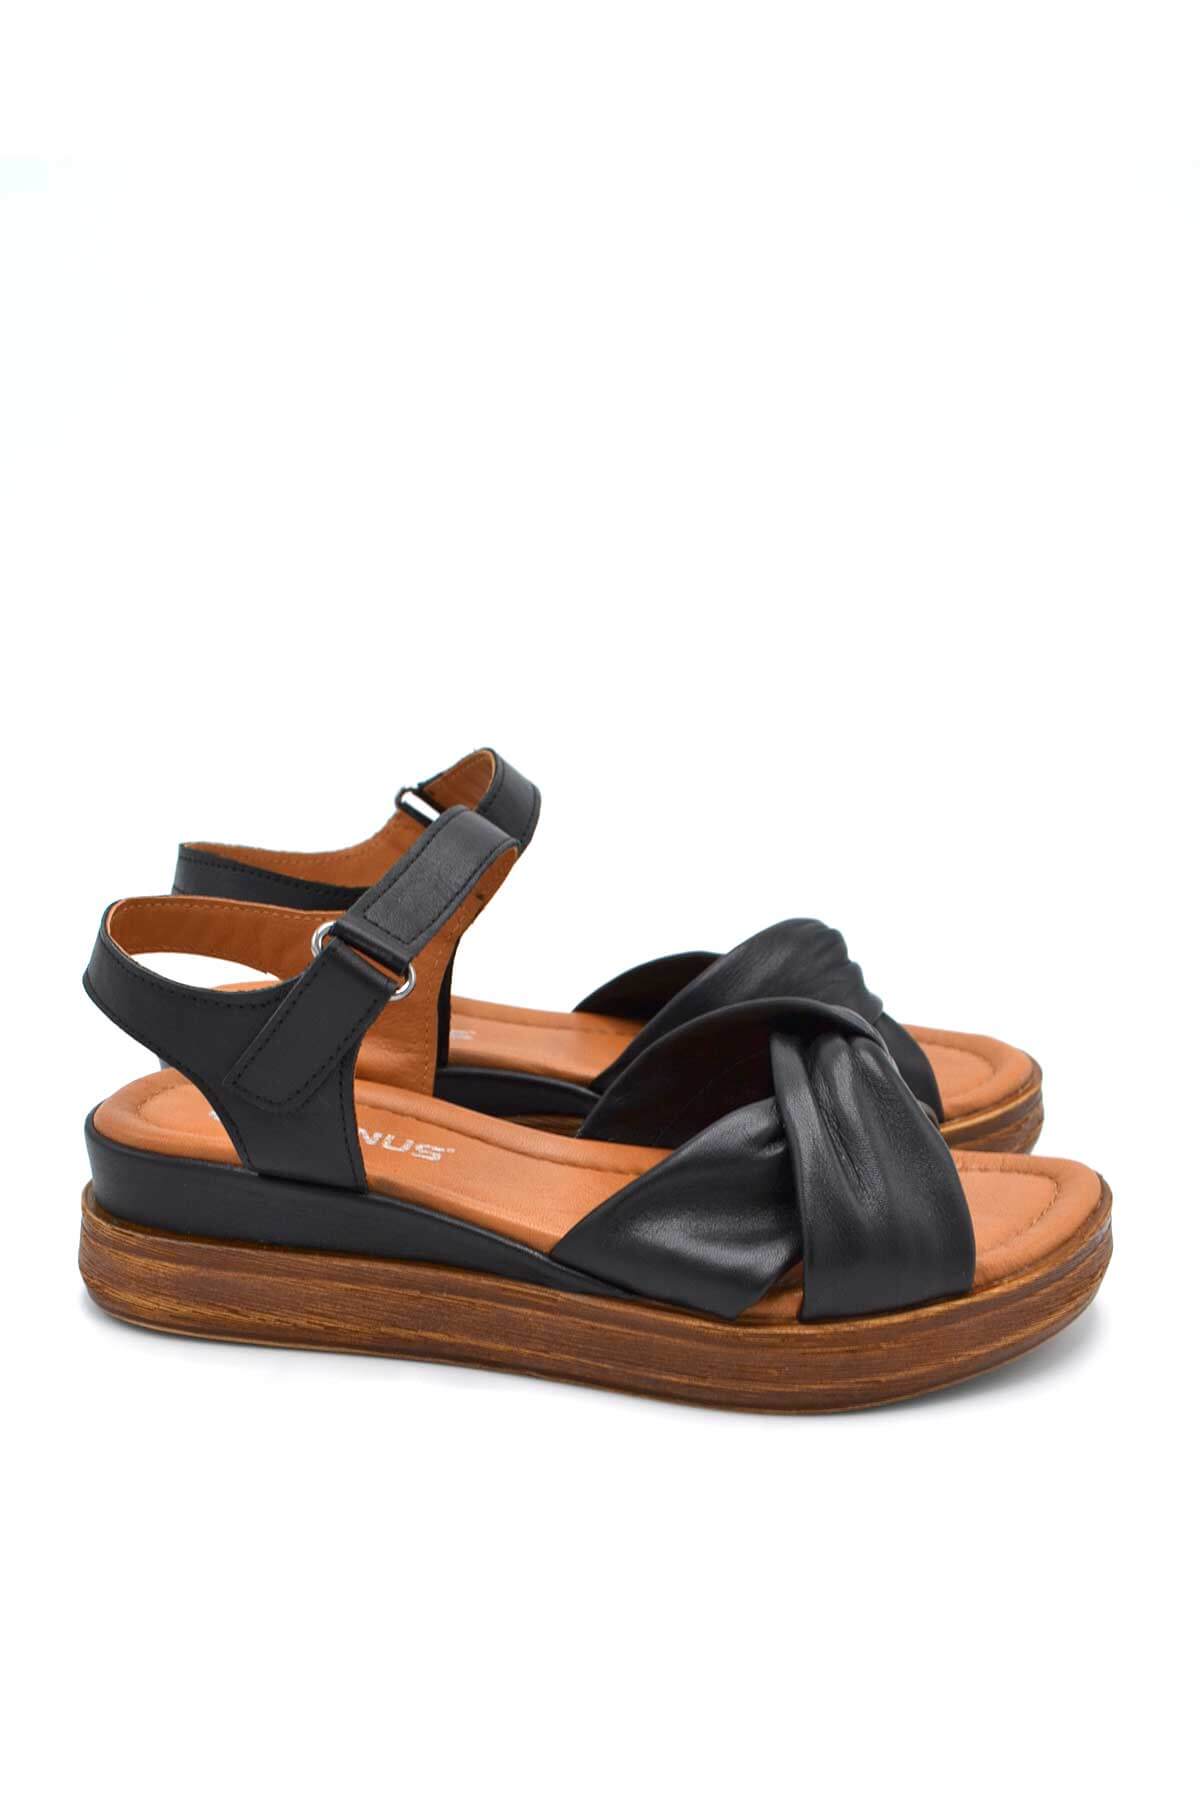 Kadın Comfort Deri Sandalet Siyah 2216403Y